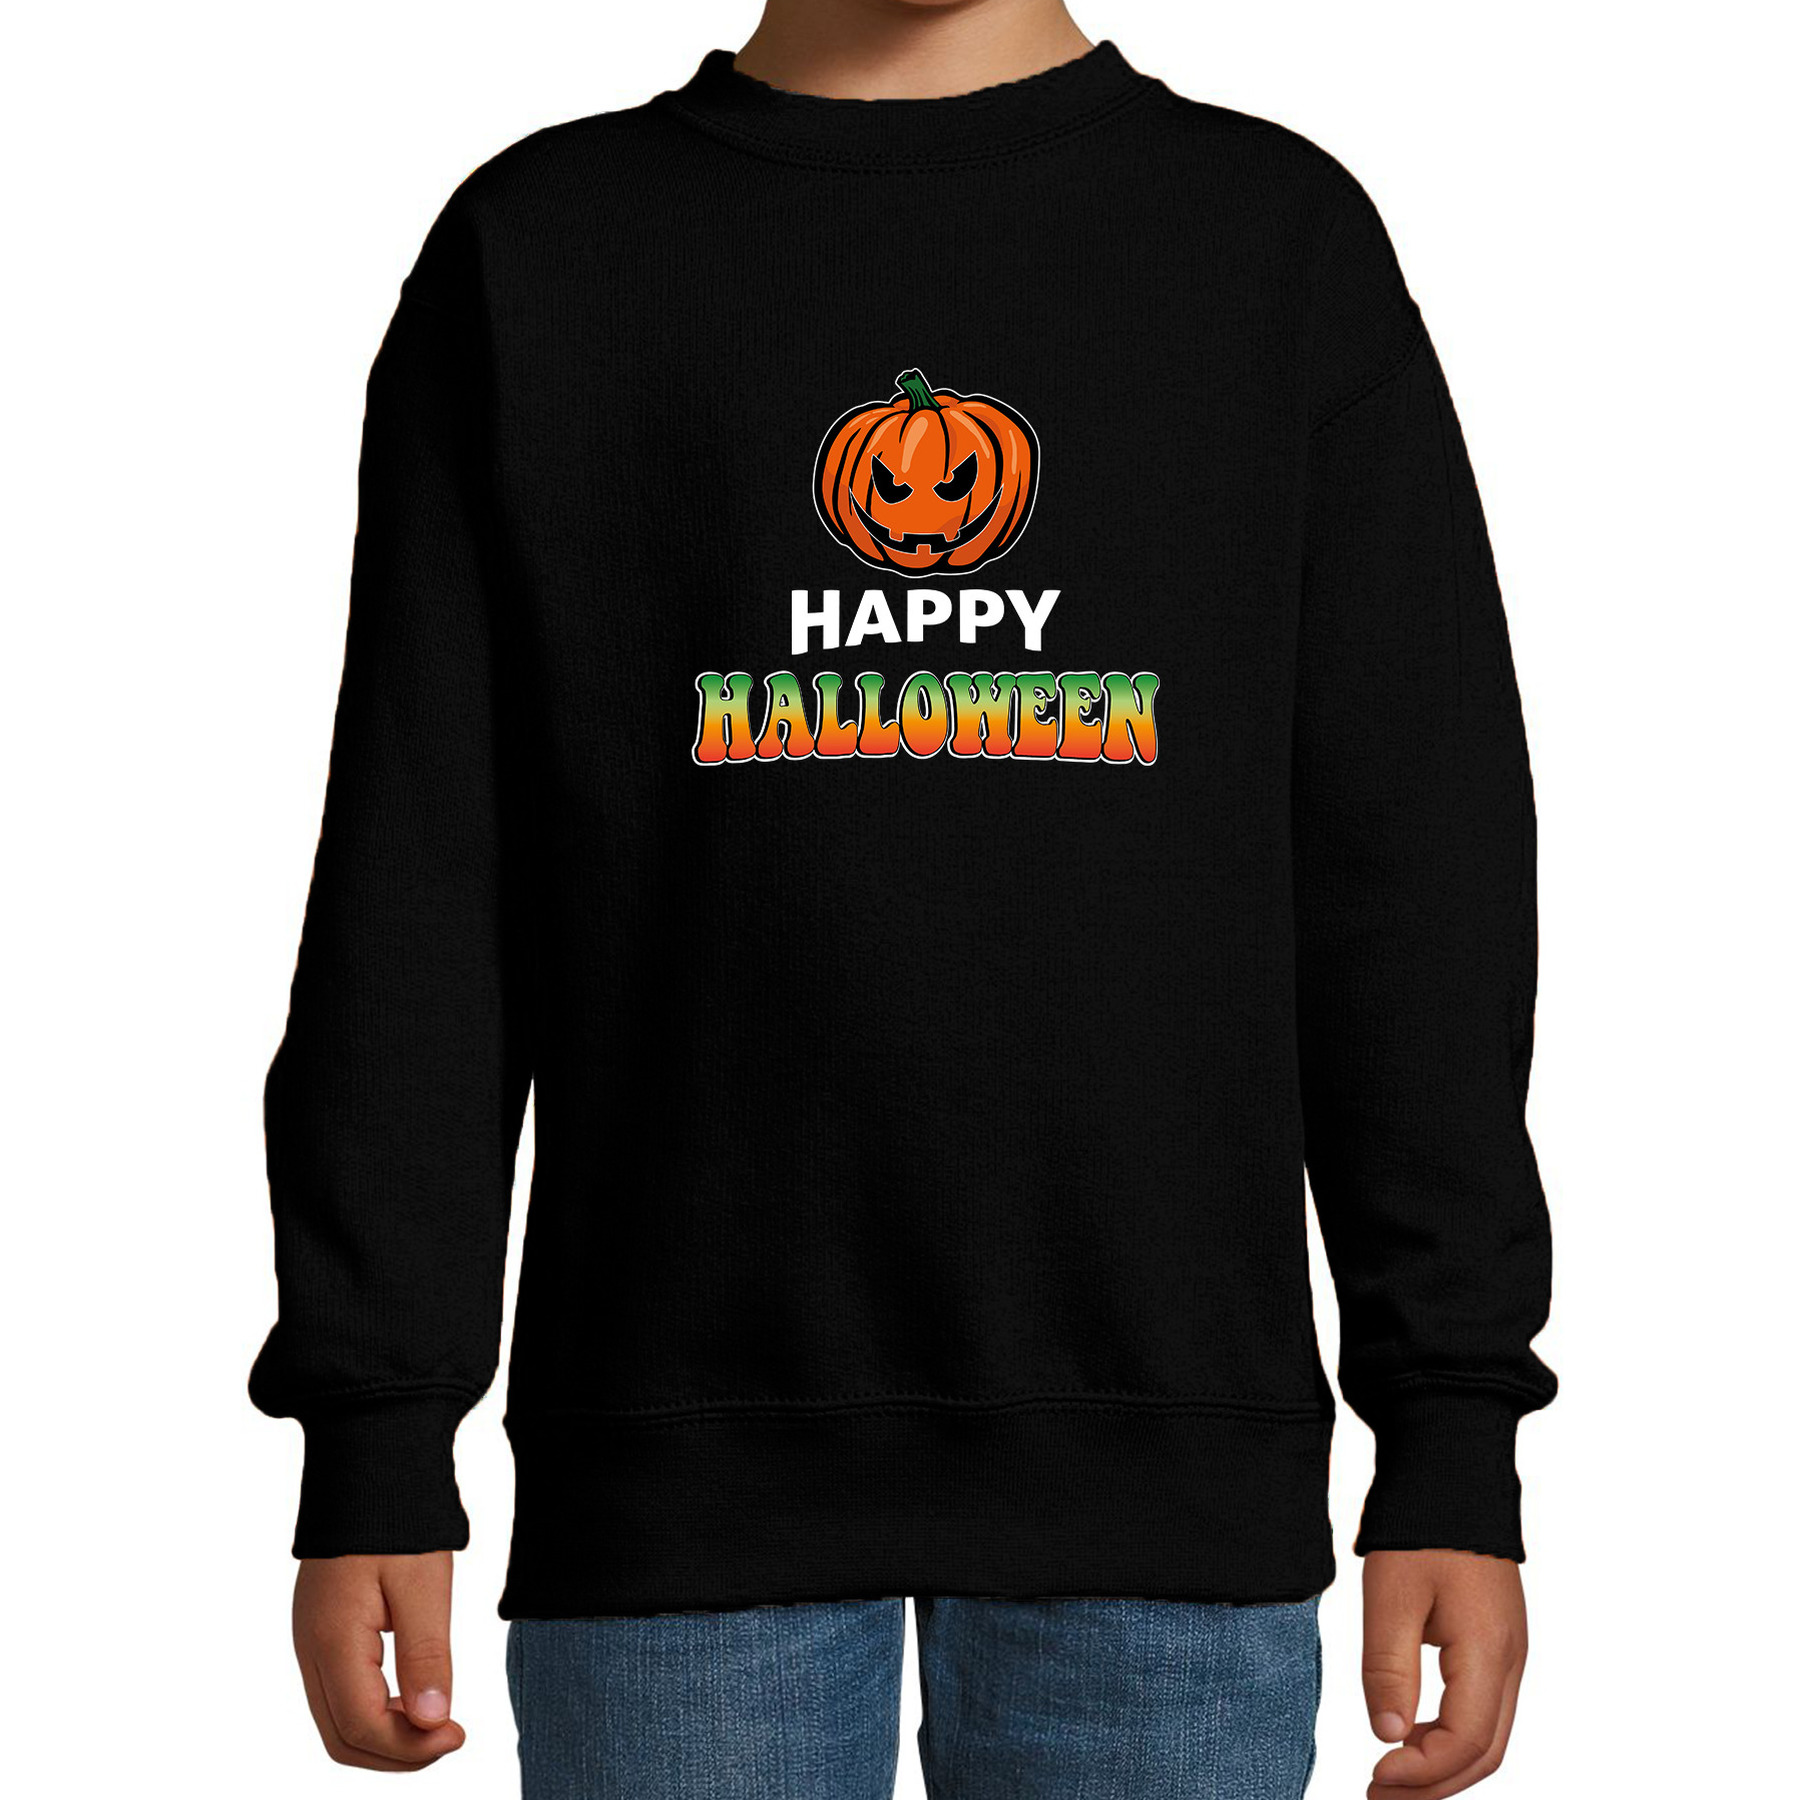 Pompoen / happy halloween verkleed sweater zwart voor kinderen